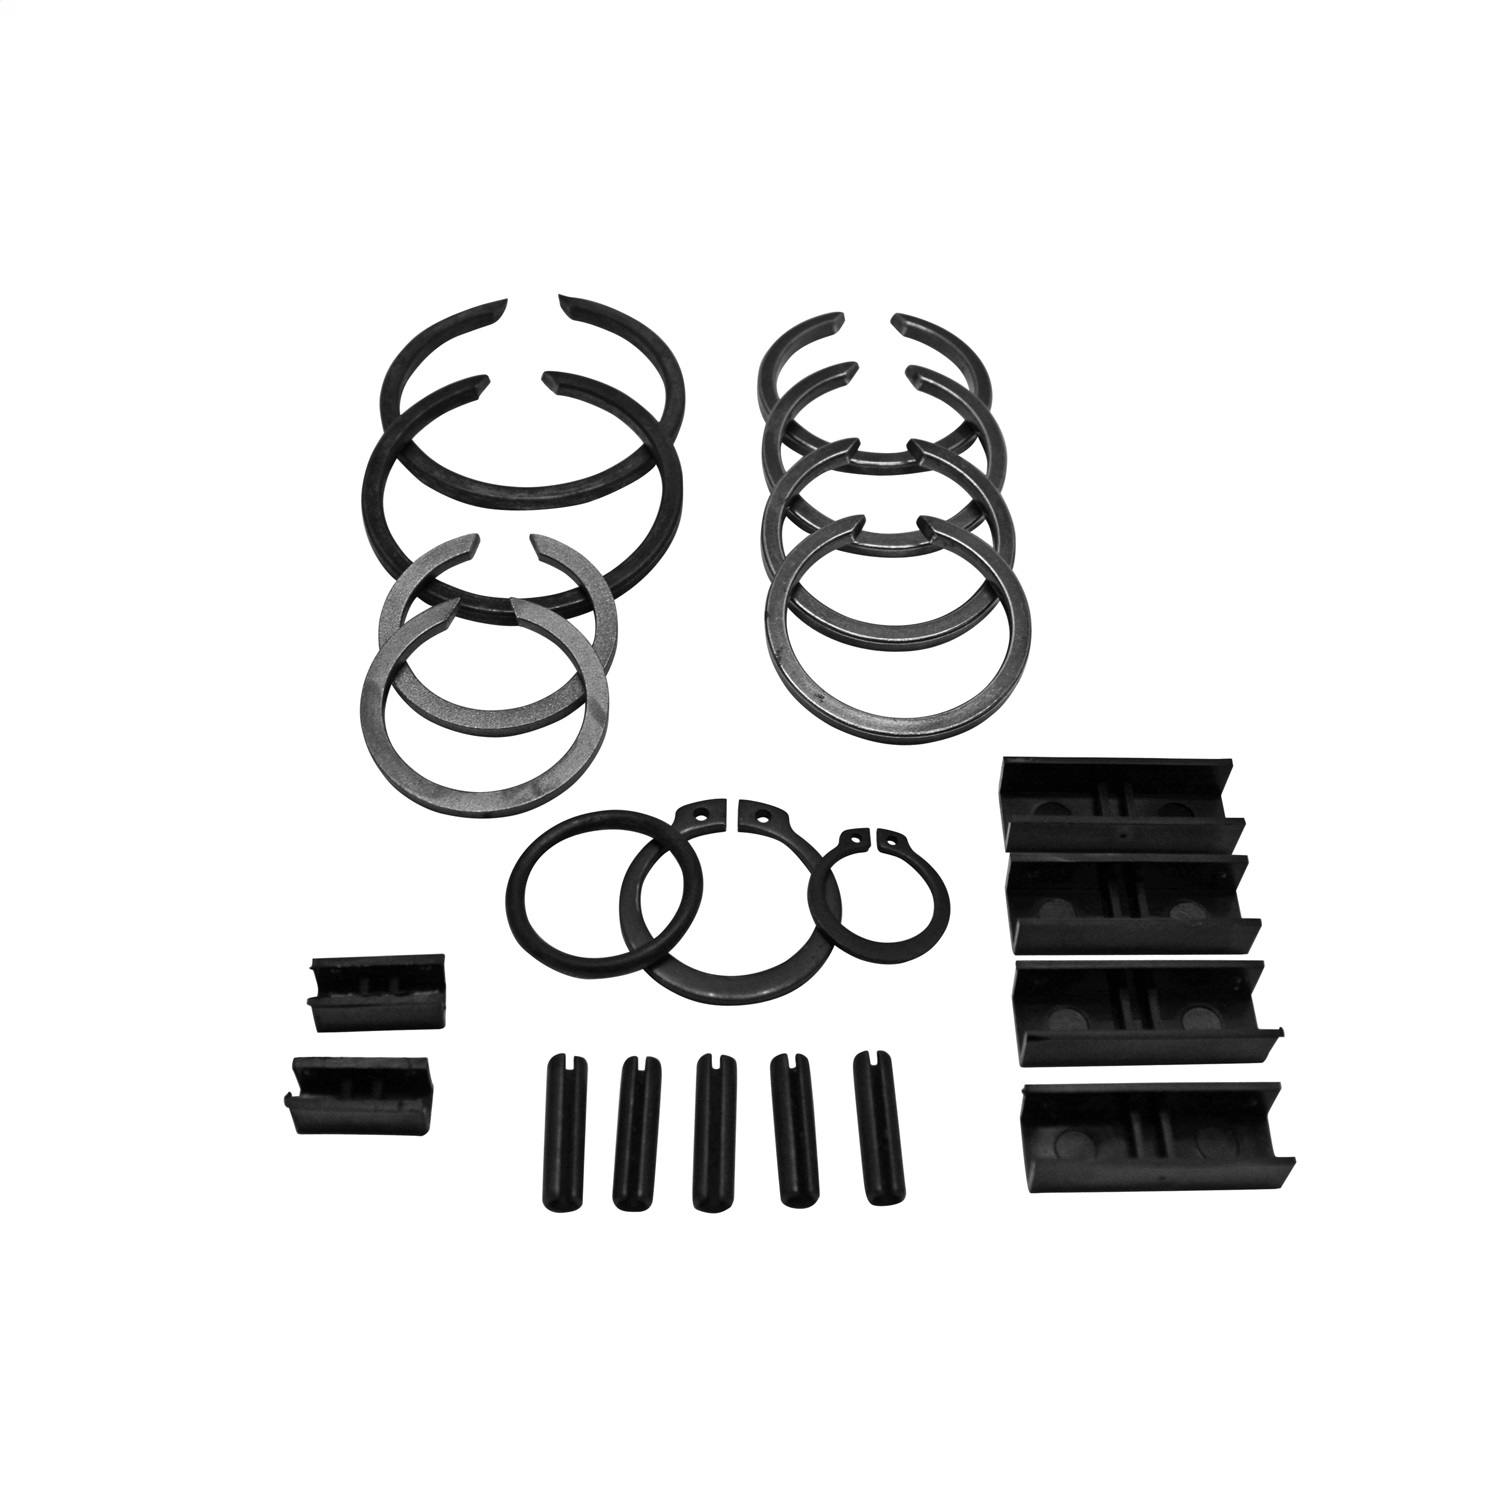 USA Standard Gear ZMSP56-50 Manual Transmission Small Parts Kit